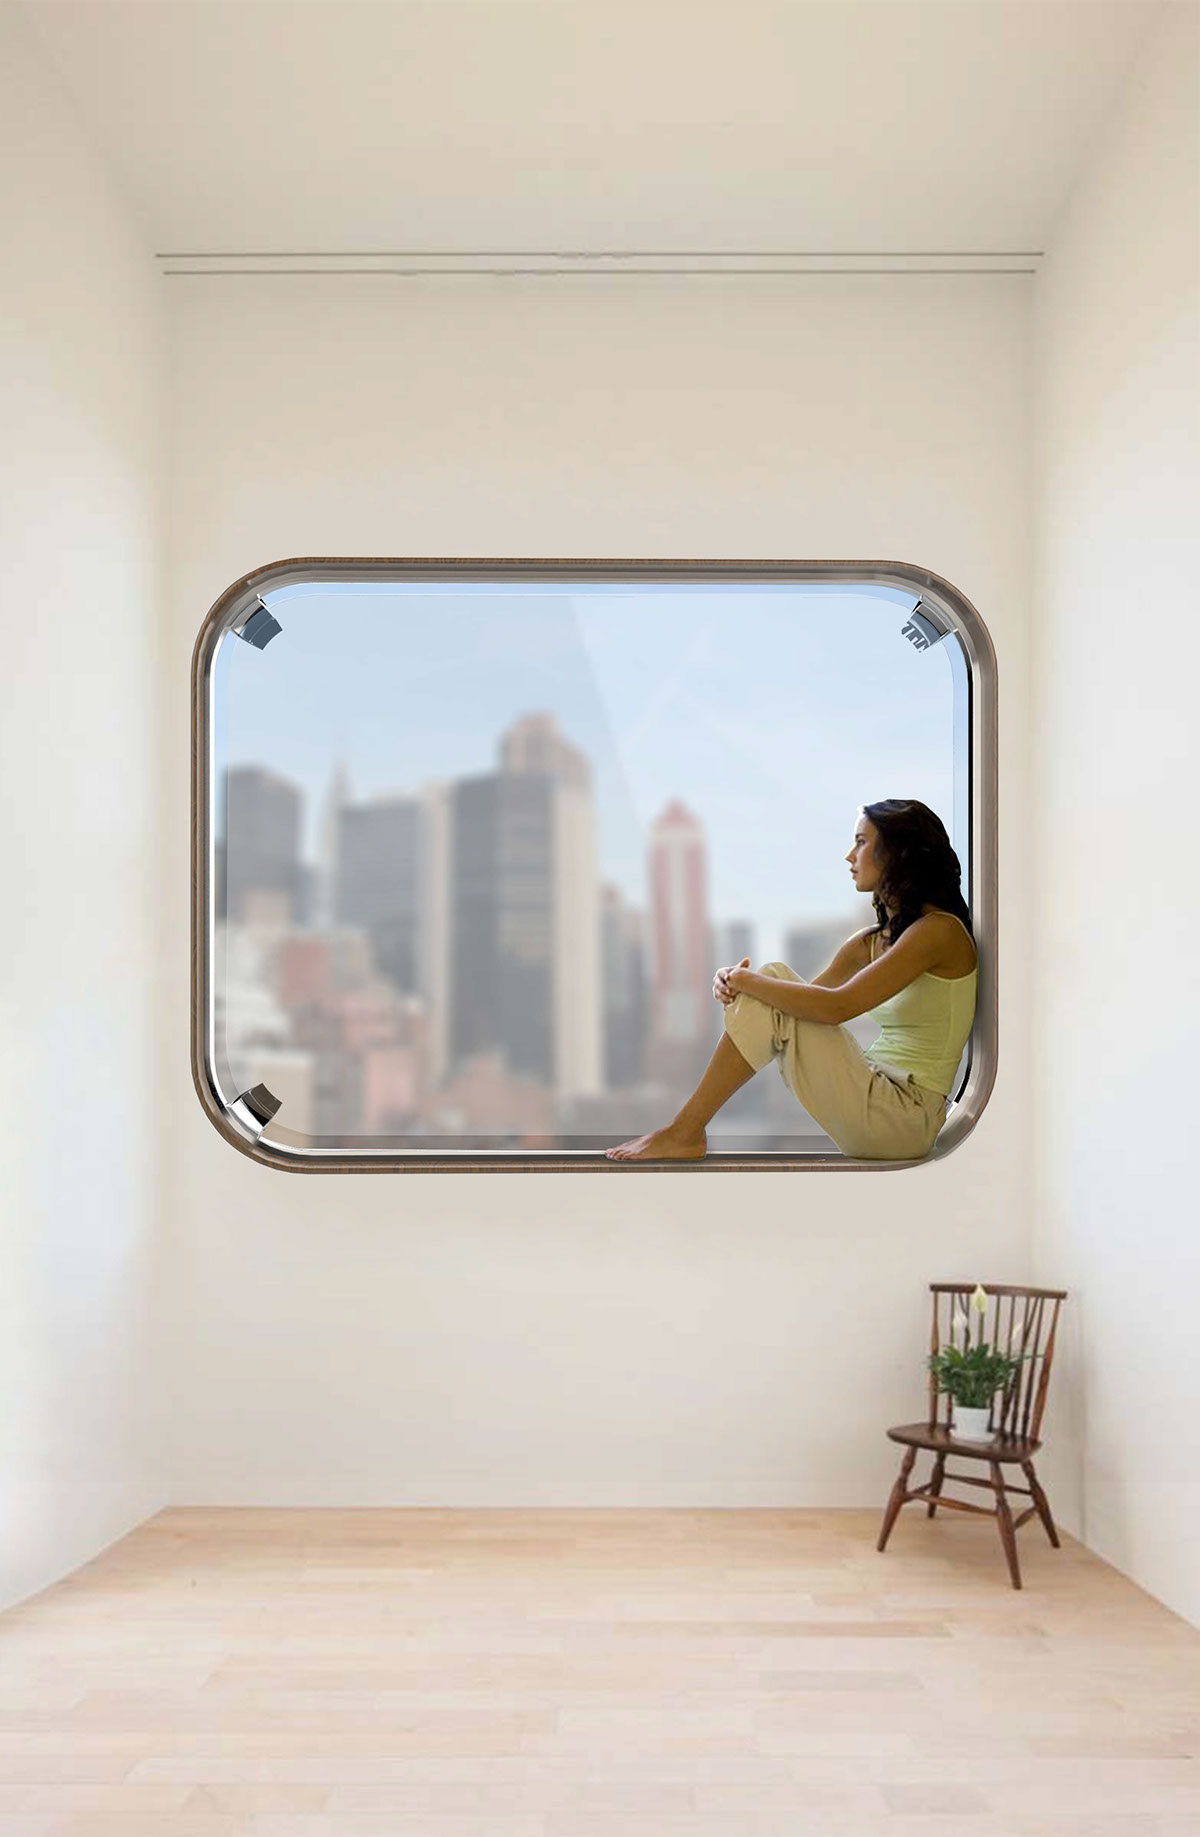 Hi tech window air purifier air multiplier concept appliance